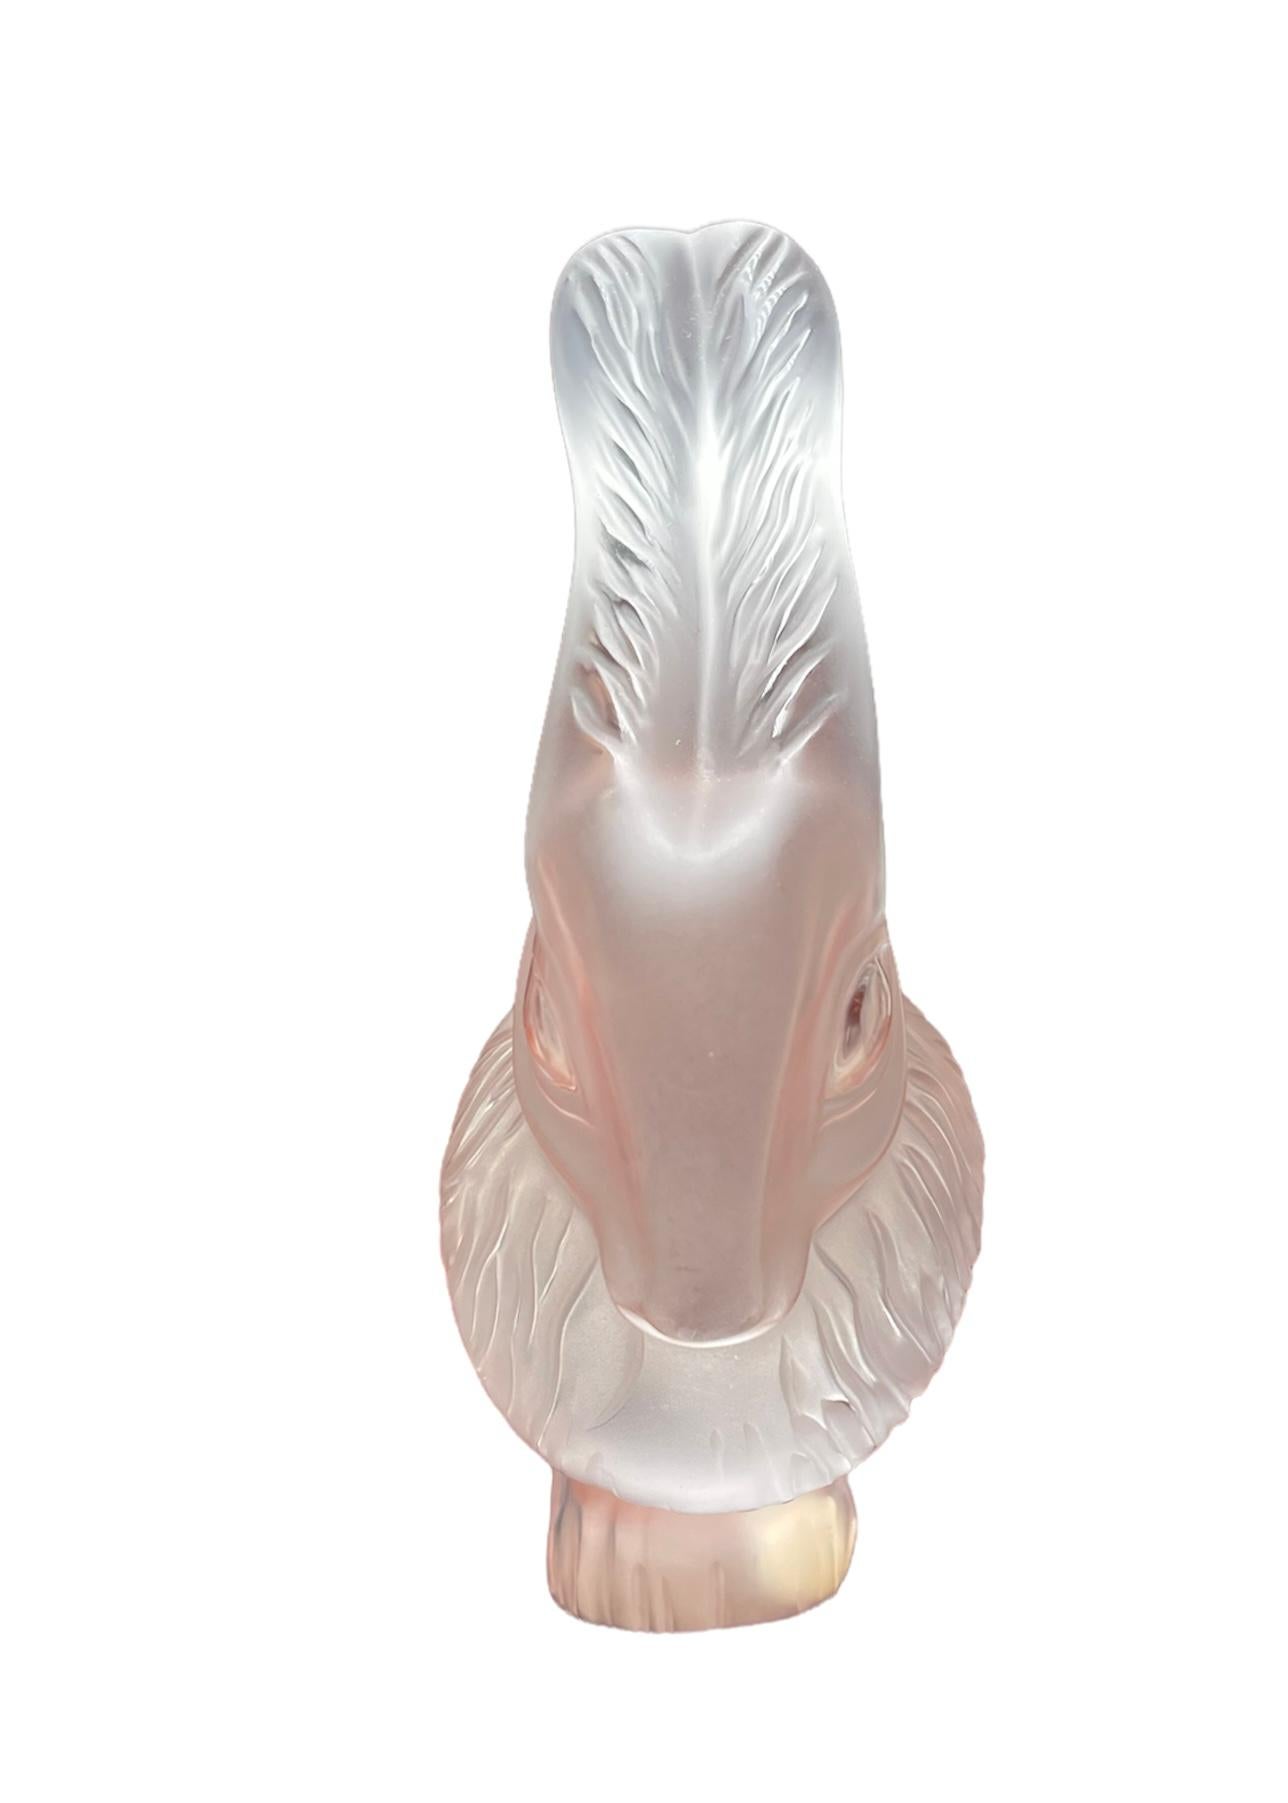 Dies ist ein Lalique gefrostet und klar Kristall Kaninchen 